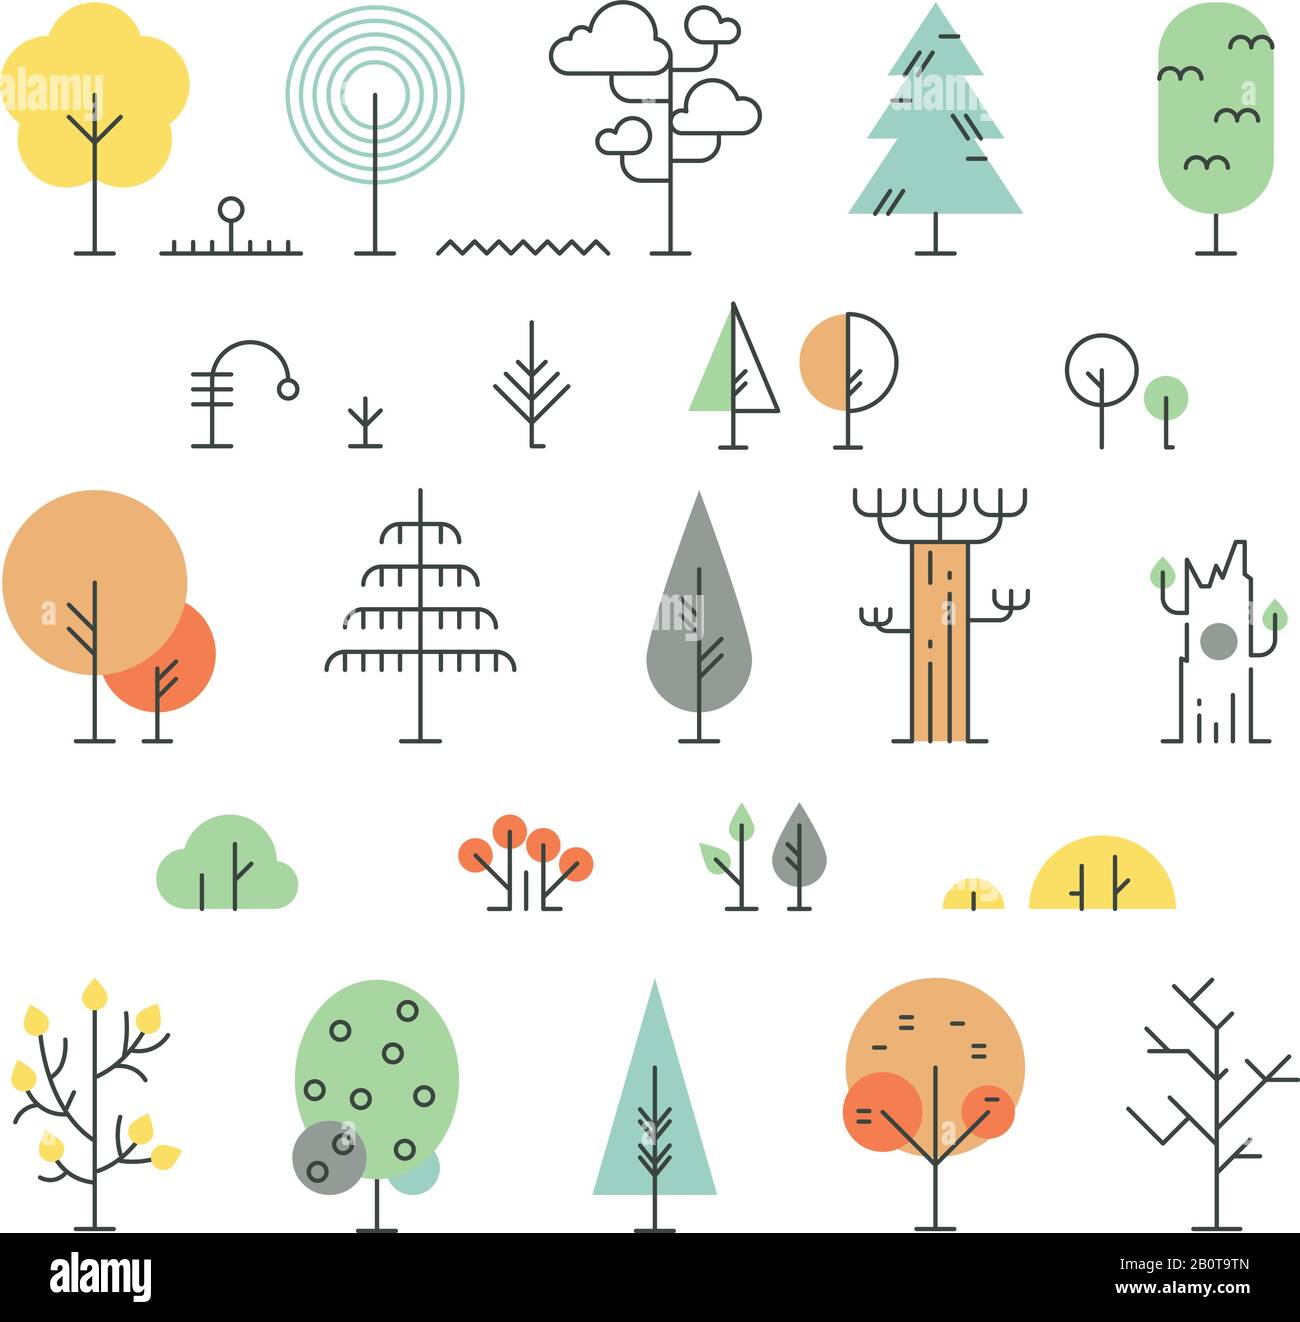 Les arbres forestiers alignent des icônes avec des formes géométriques simples. Style linéaire d'arbre simple. Illustration vectorielle Illustration de Vecteur